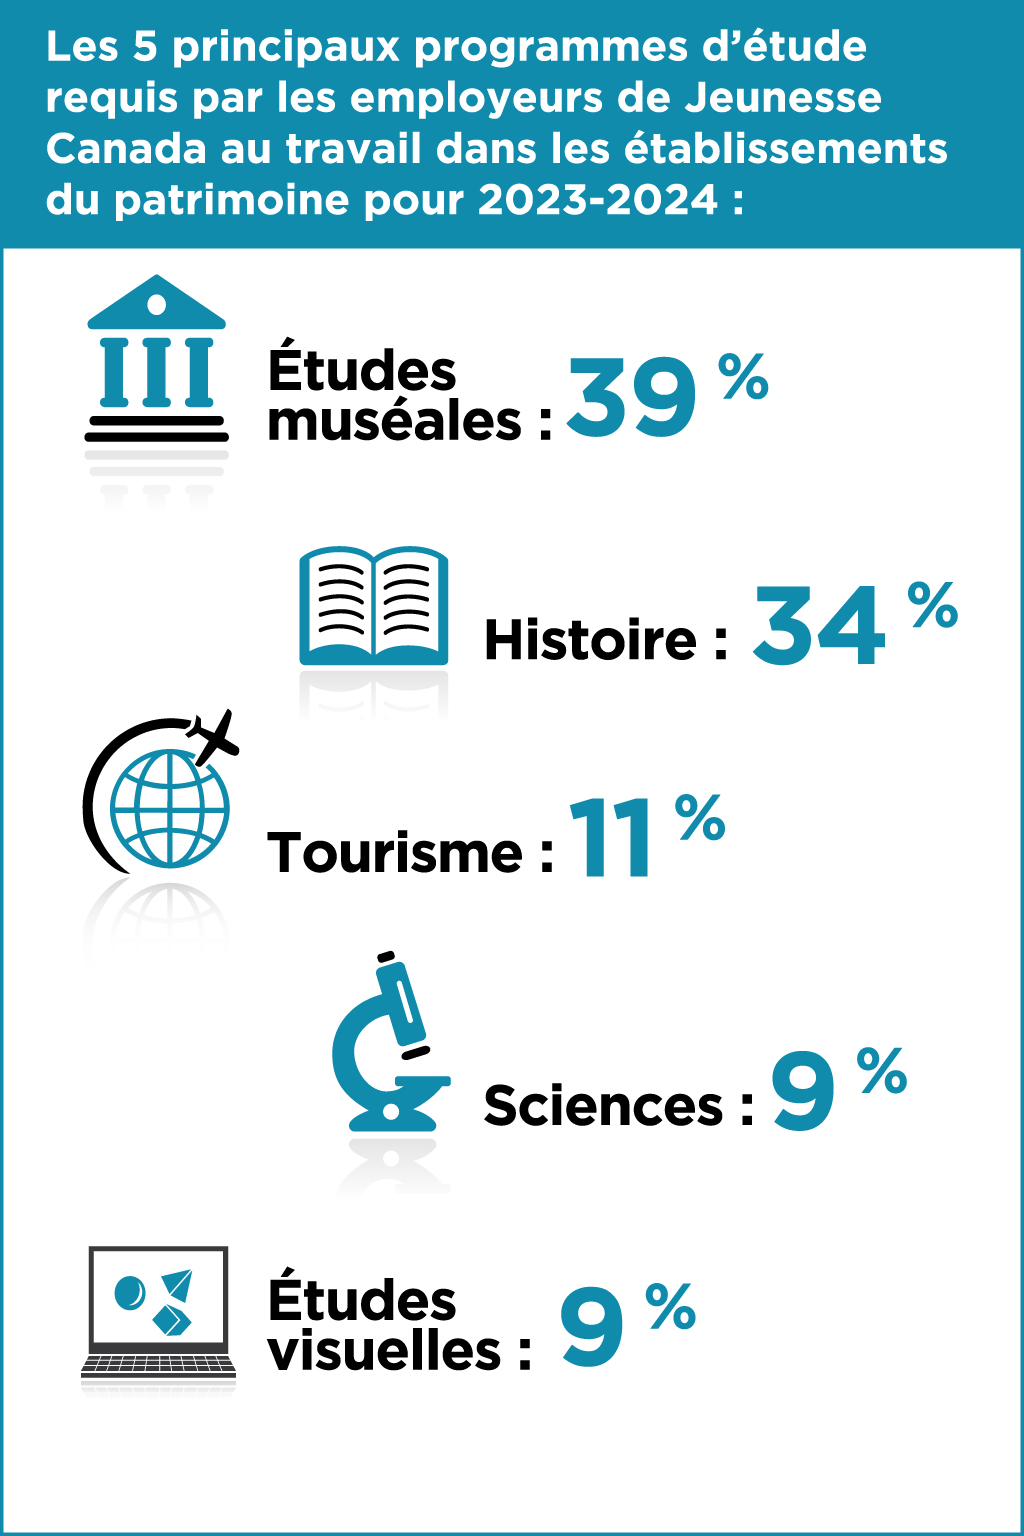 Les 5 principaux programmes d’étude requis par les employeurs de Jeunesse Canada au travail dans les établissements du patrimoine pour 2023-2024